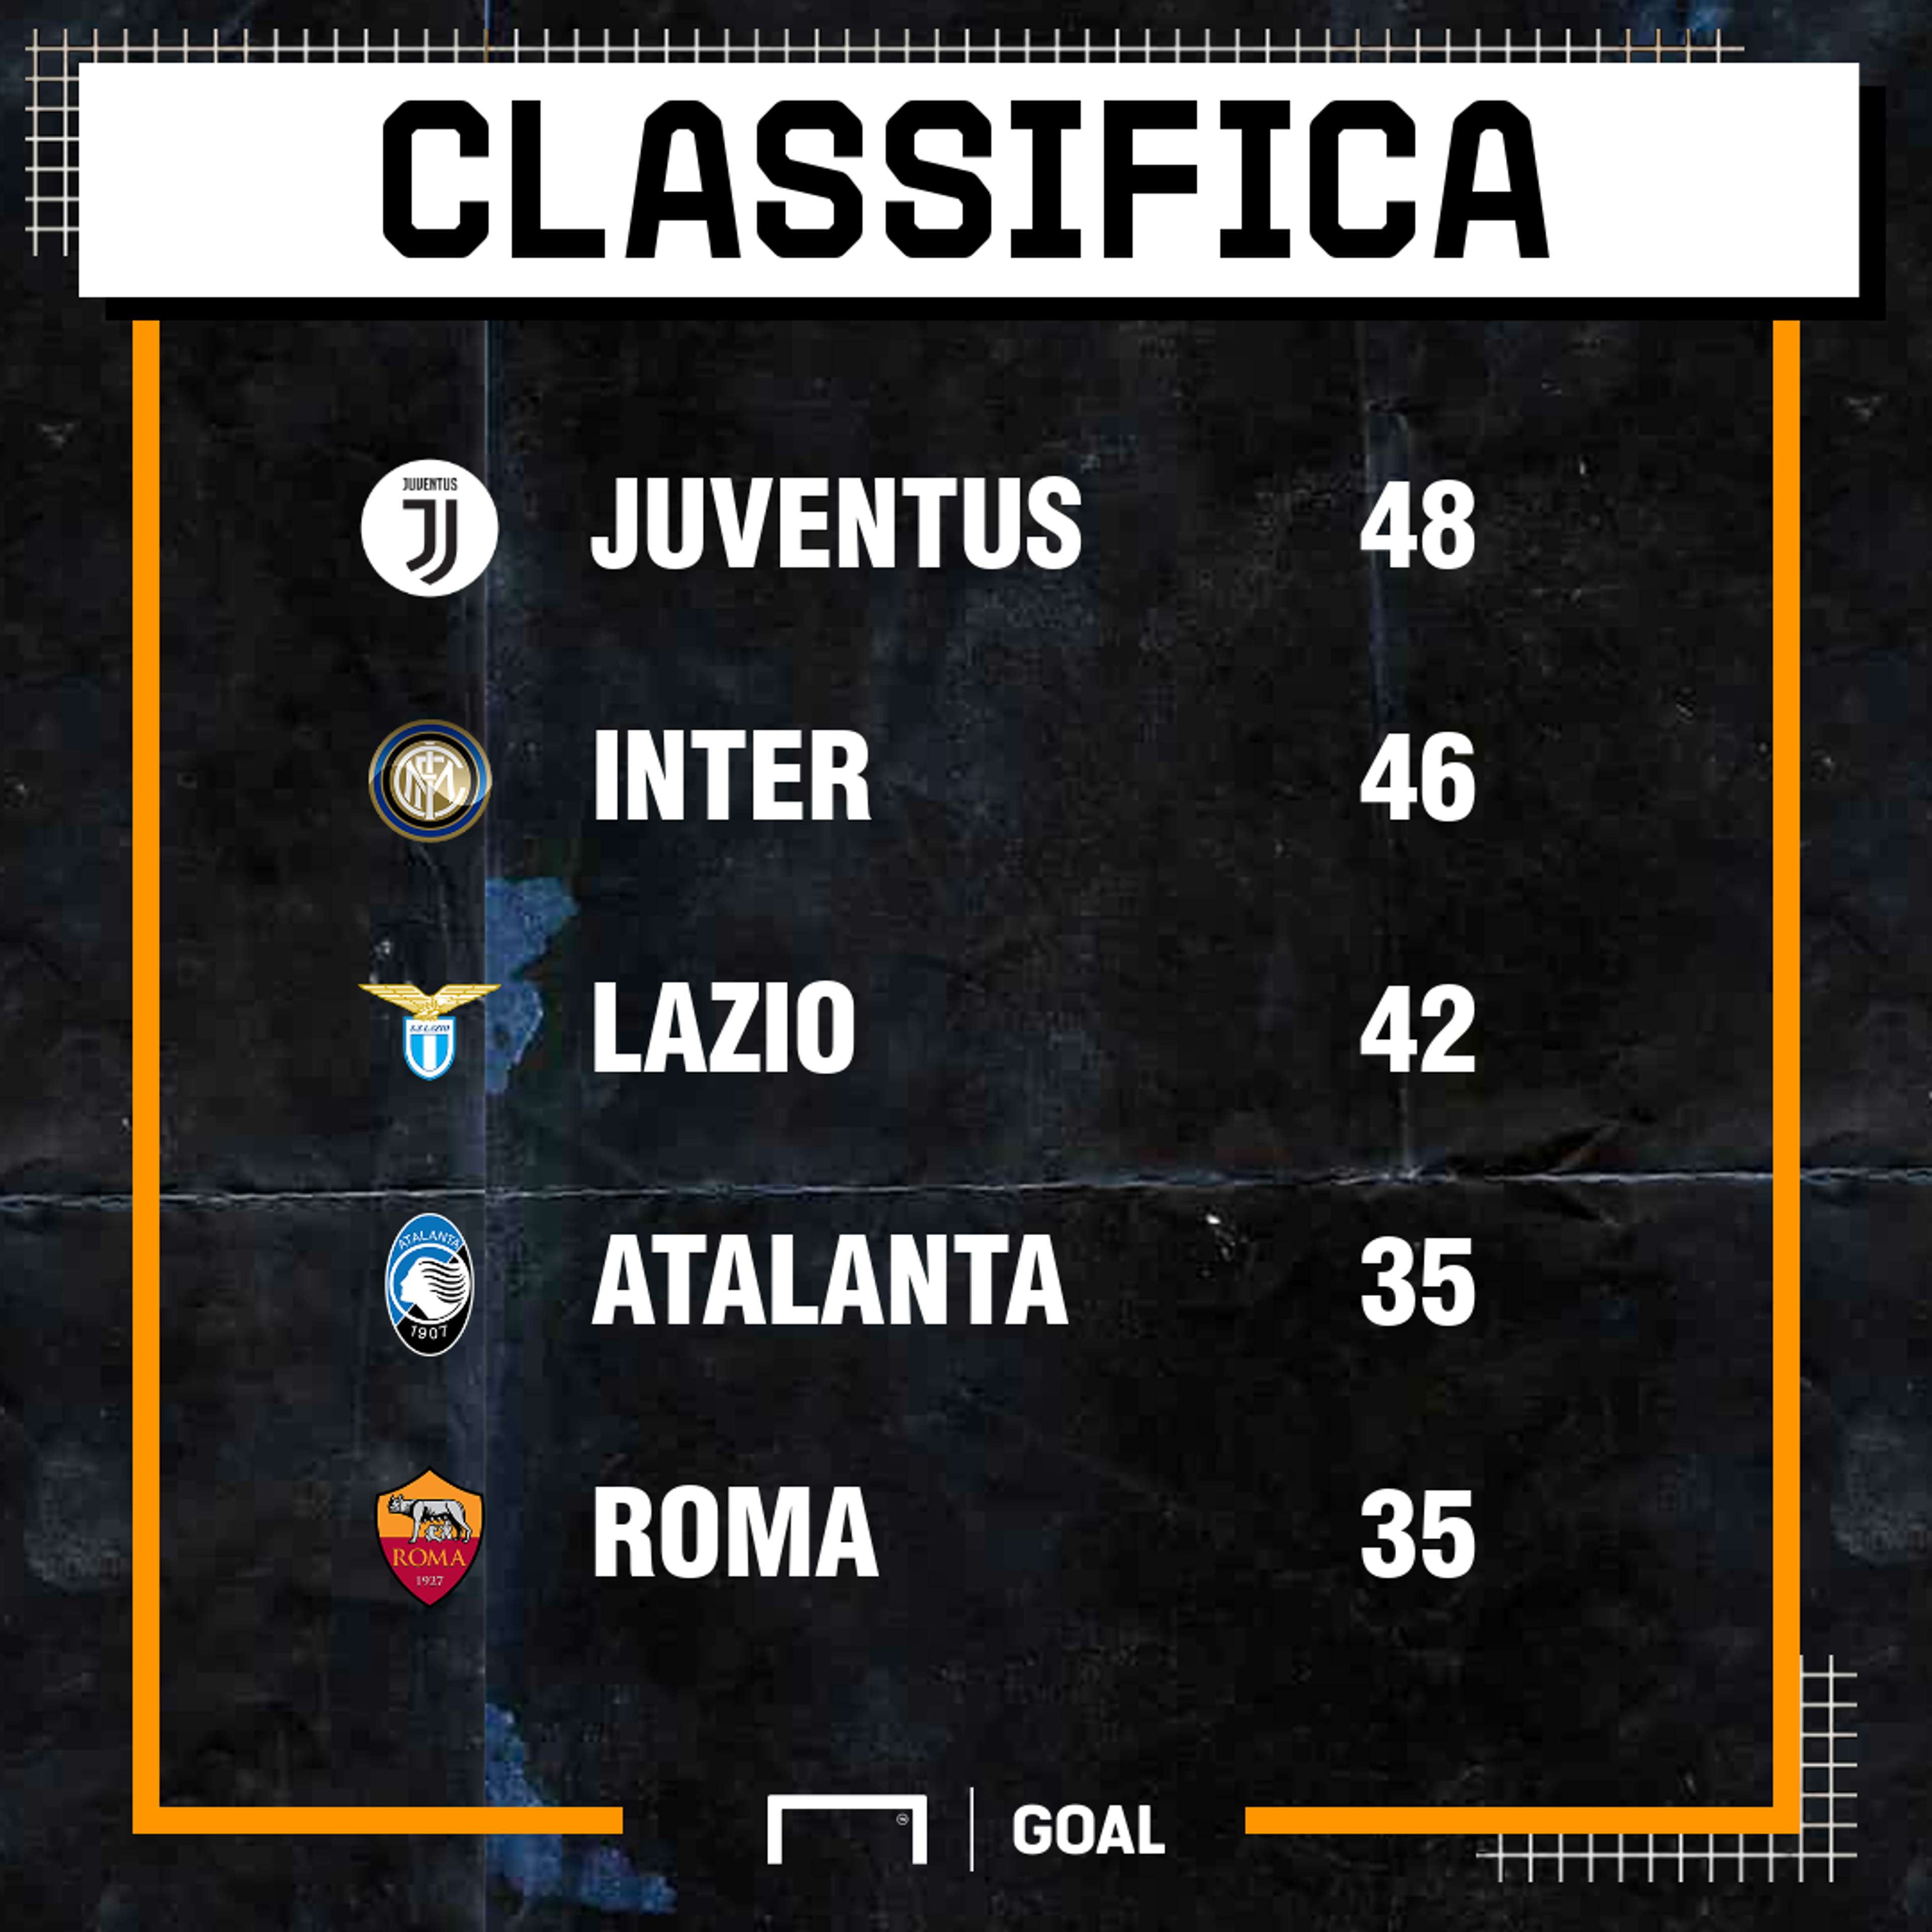 Classifica girone d'andata Serie A 19/20